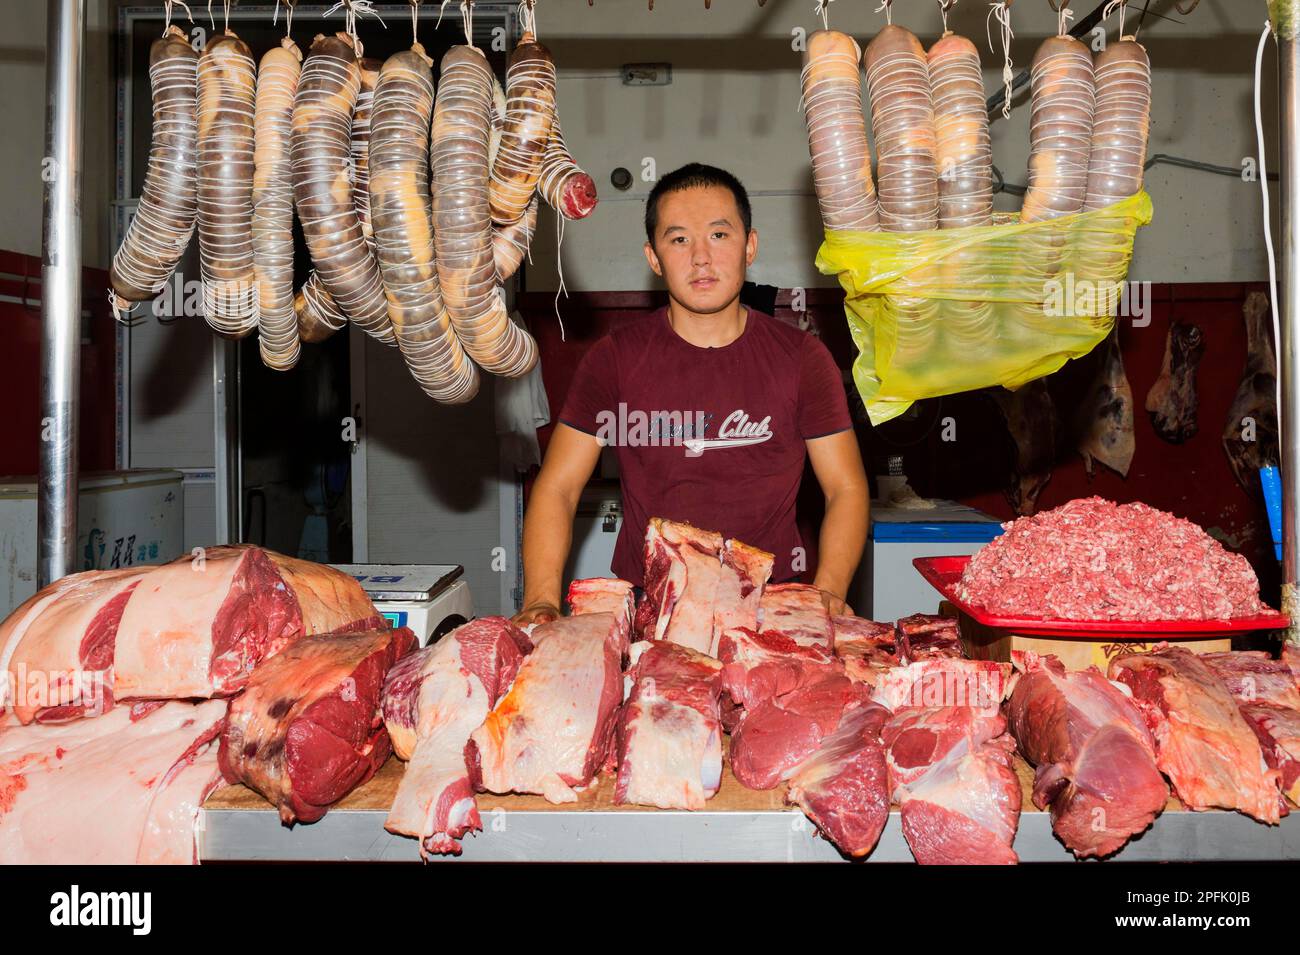 Hombre kazajo que vende carne, Samal Bazar, Shymkent, región sur, Kazajstán, Asia Central, solo para uso editorial Foto de stock